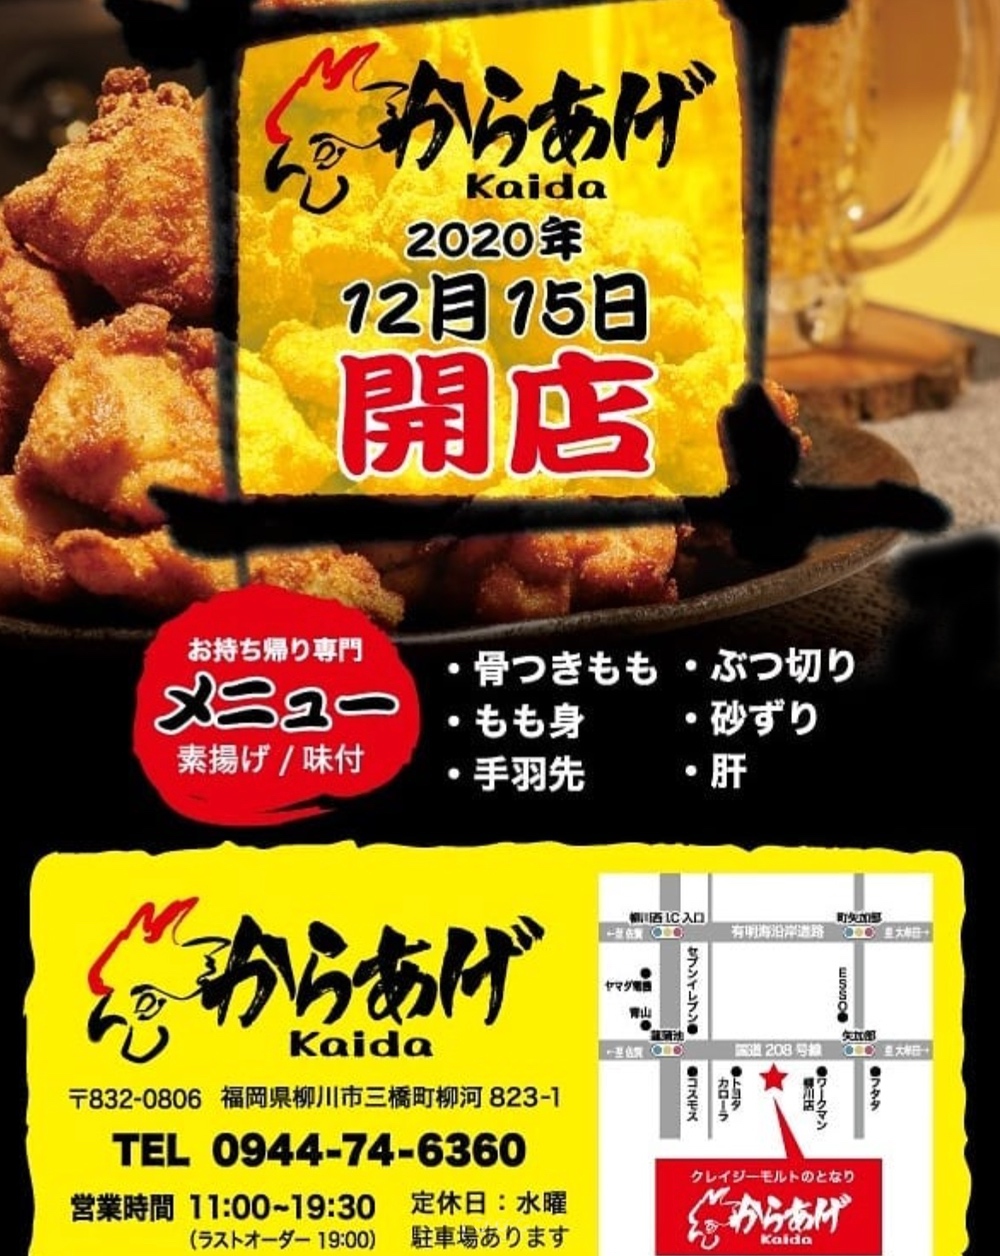 からあげ Kaida 柳川市三橋町に唐揚げ店が12月15日オープン